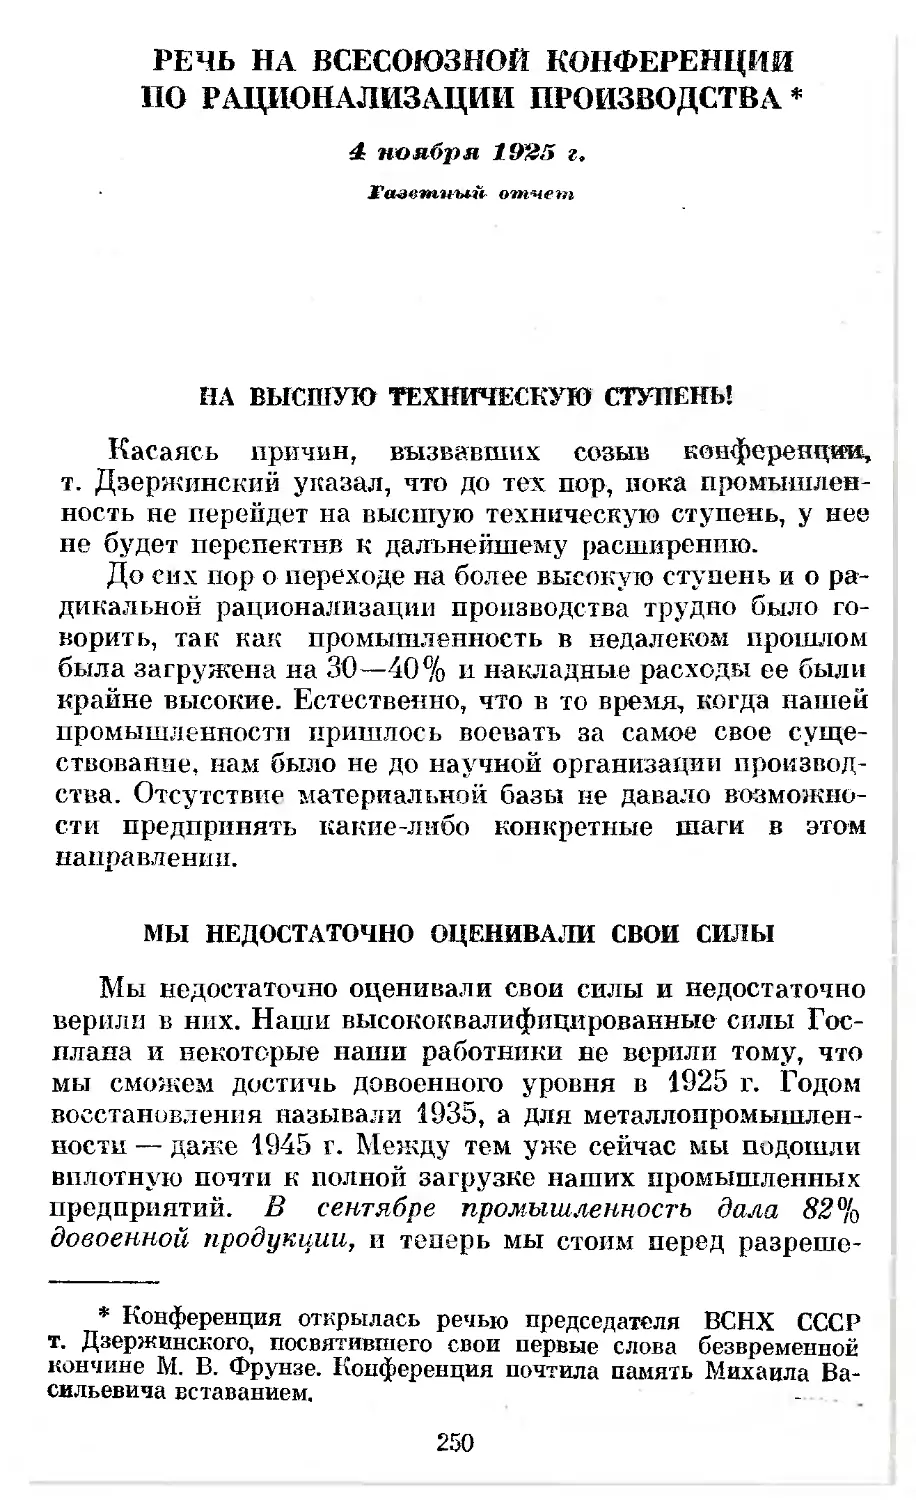 Речь на Всесоюзной конференции по рационализации производства 4 ноября 1925 г. Газетный отчет